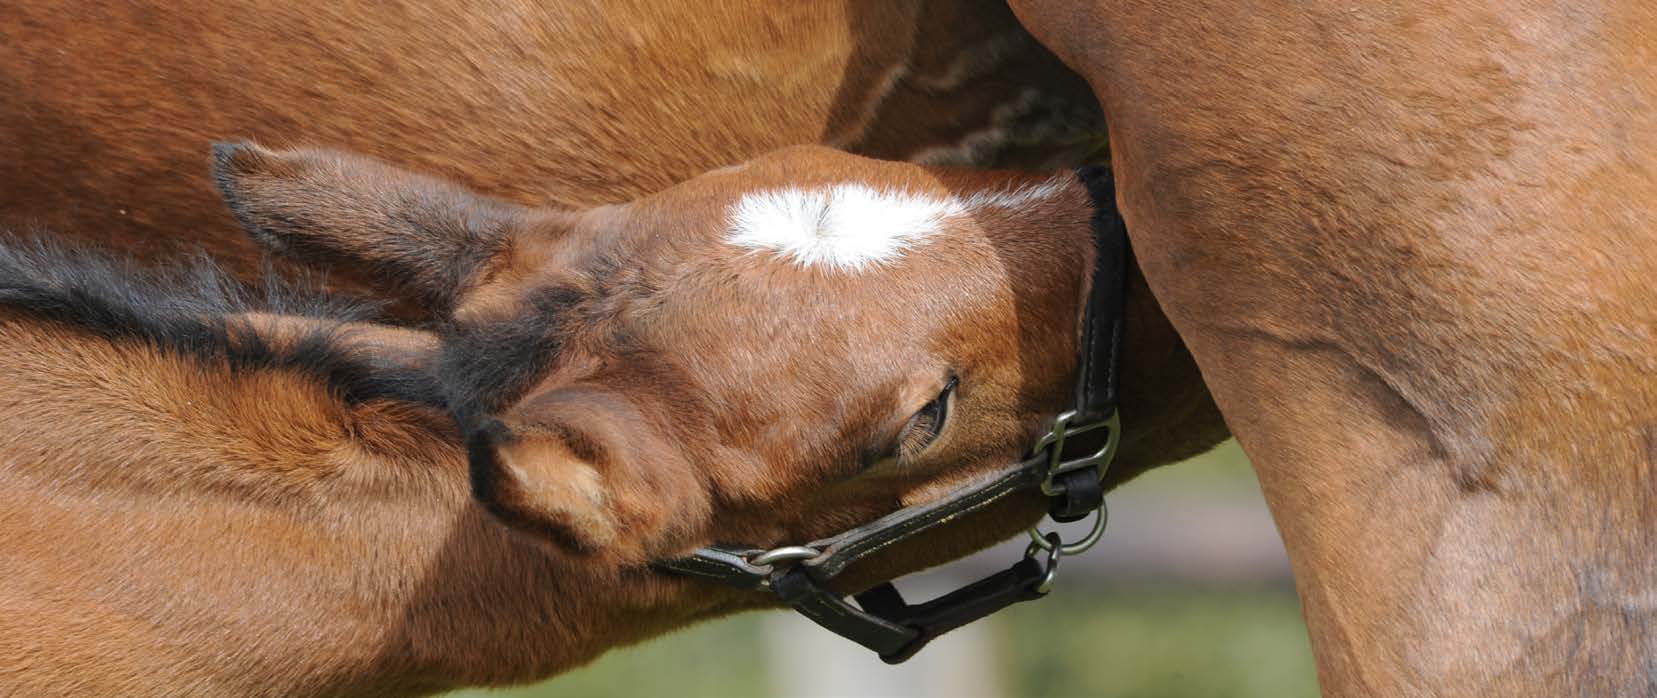 Foals benefit from selenium in broodmare’s diet